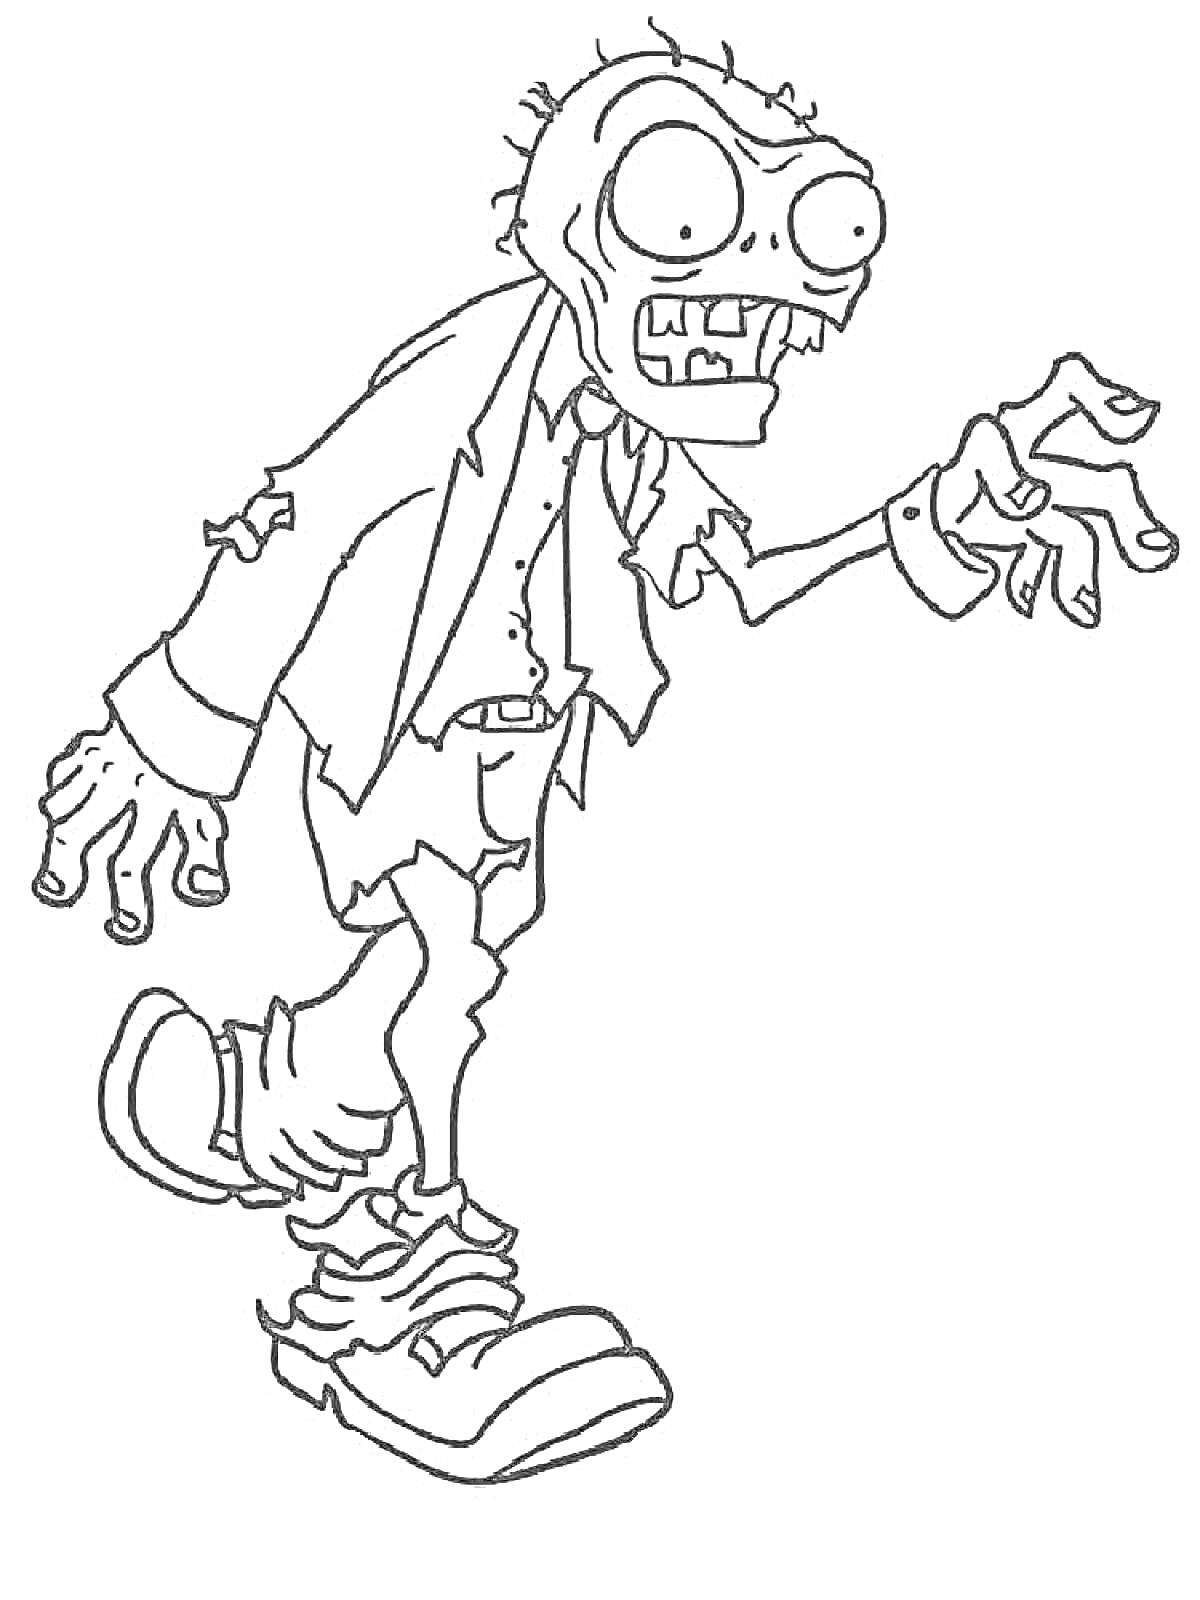 Раскраска Зомби в рваной одежде с вытянутой рукой.